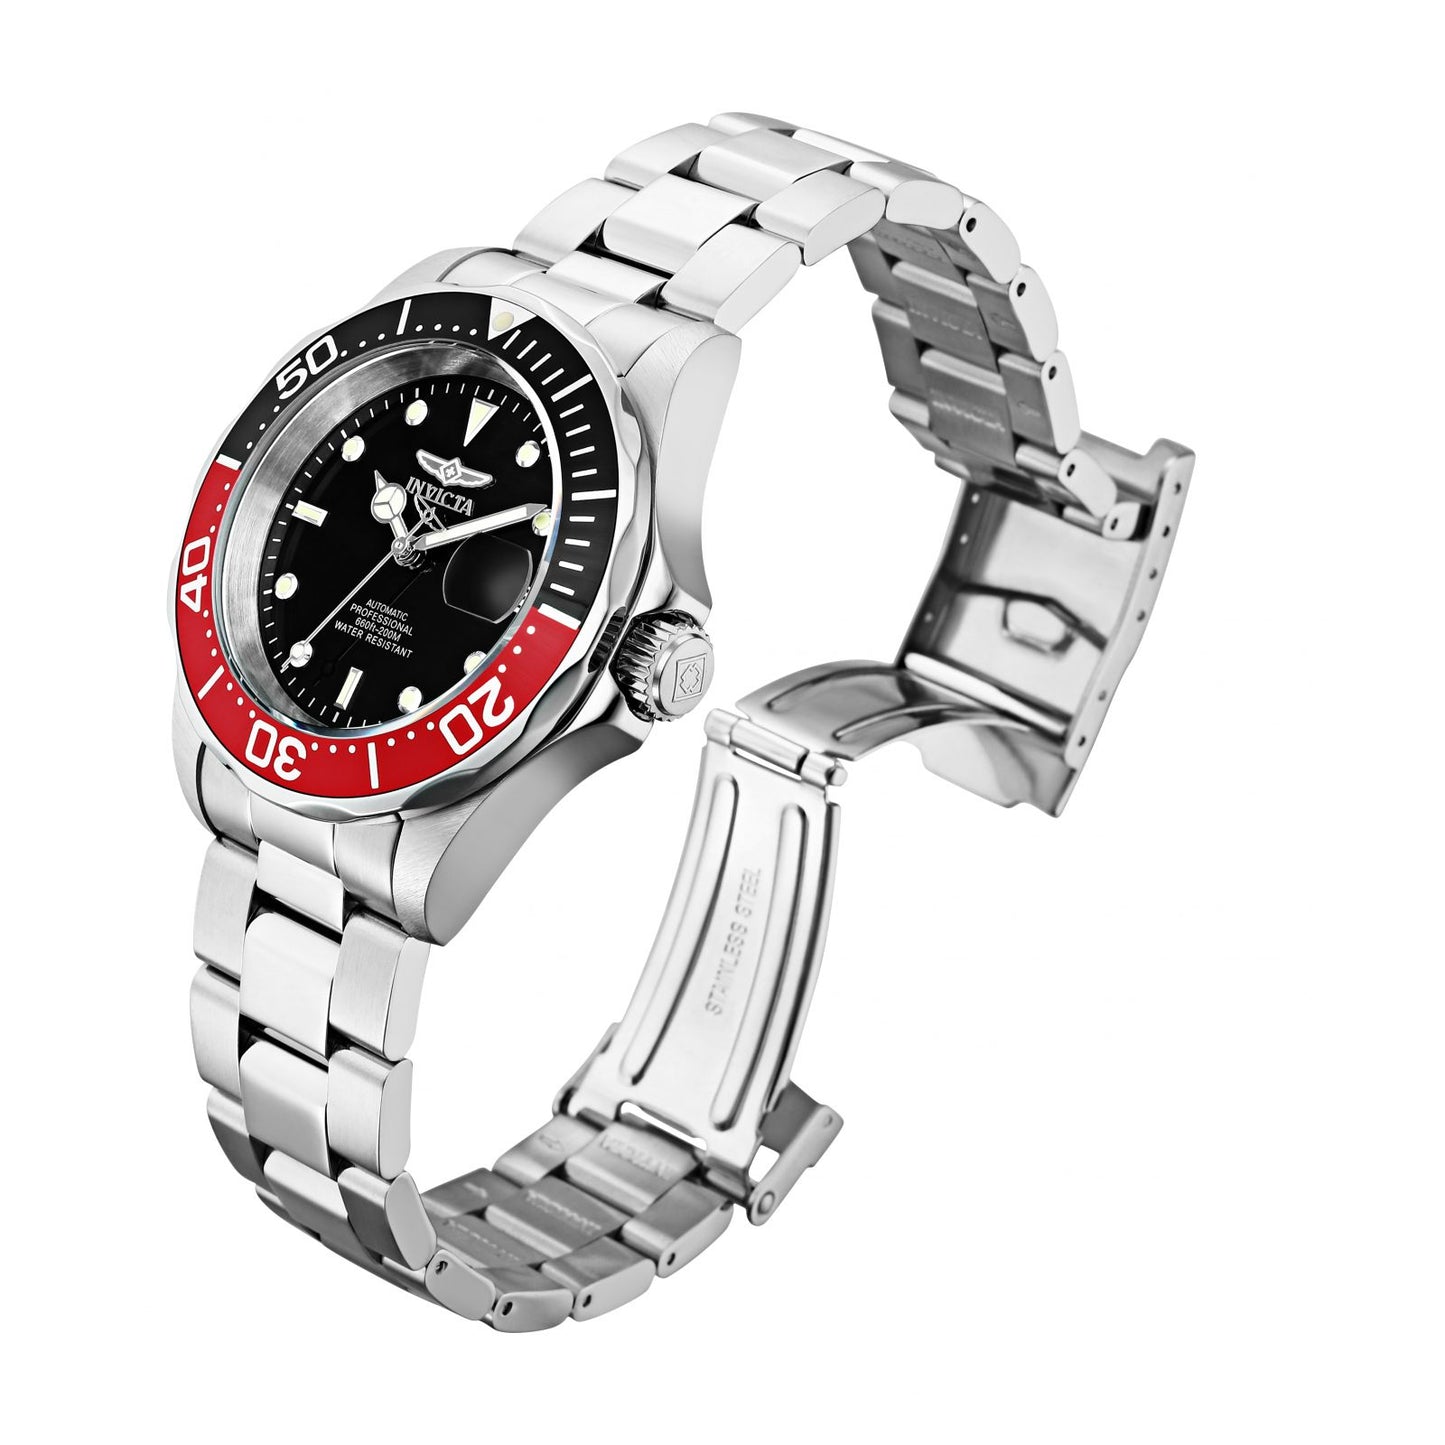 Reloj Invicta Pro Diver 9403